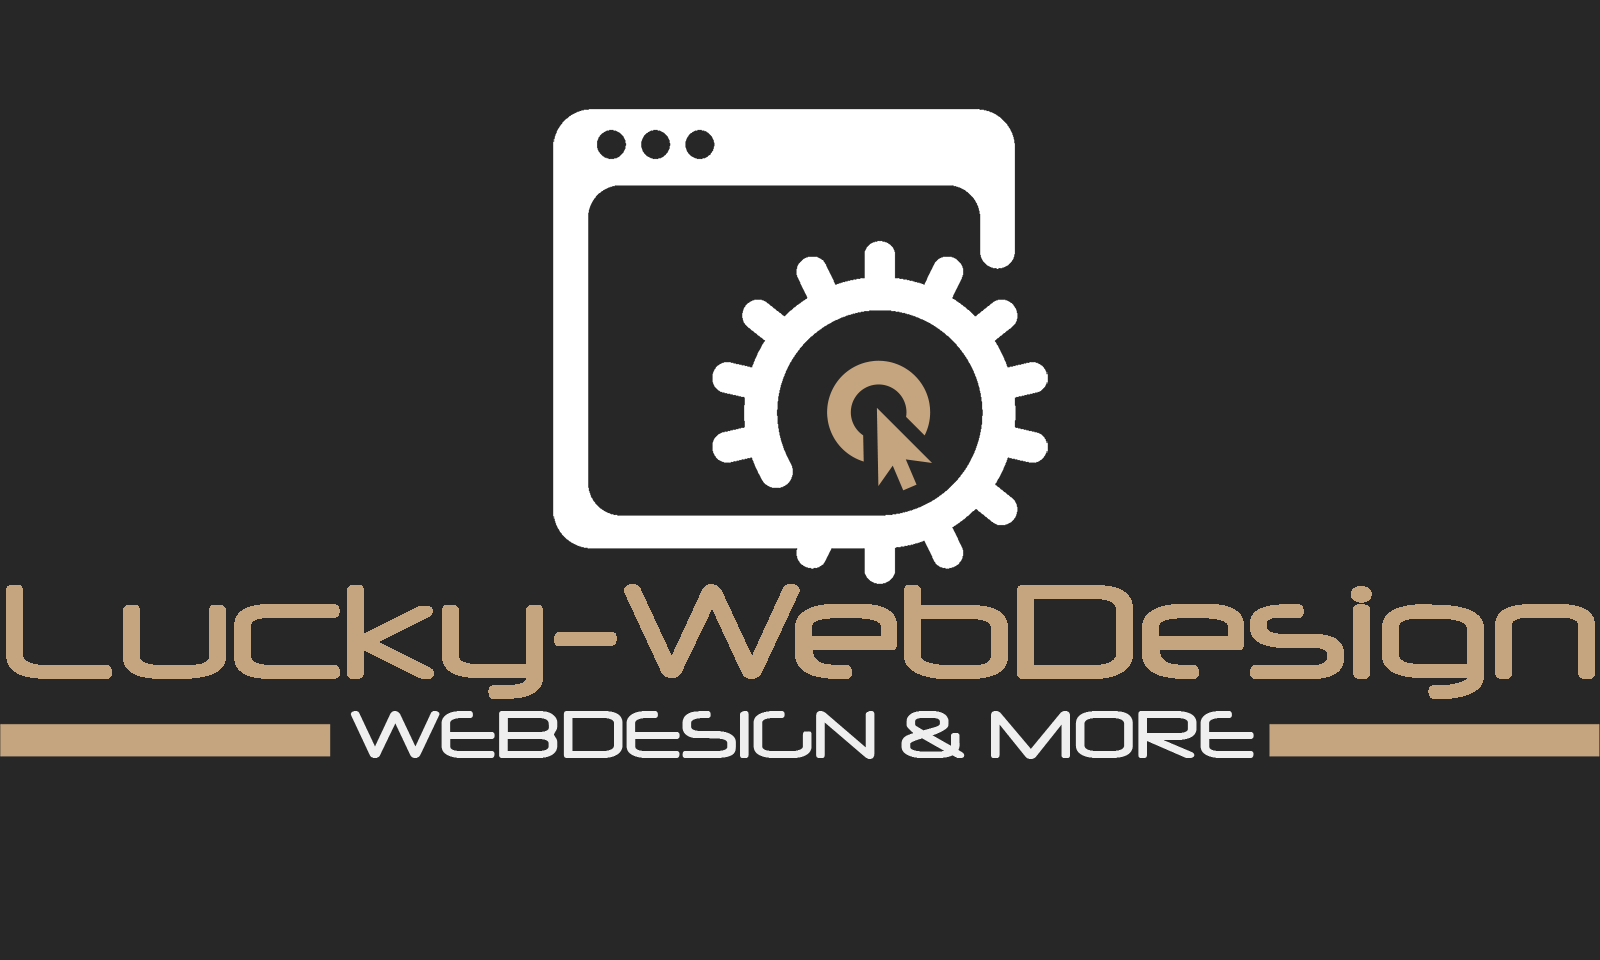 (c) Lucky-webdesign.com